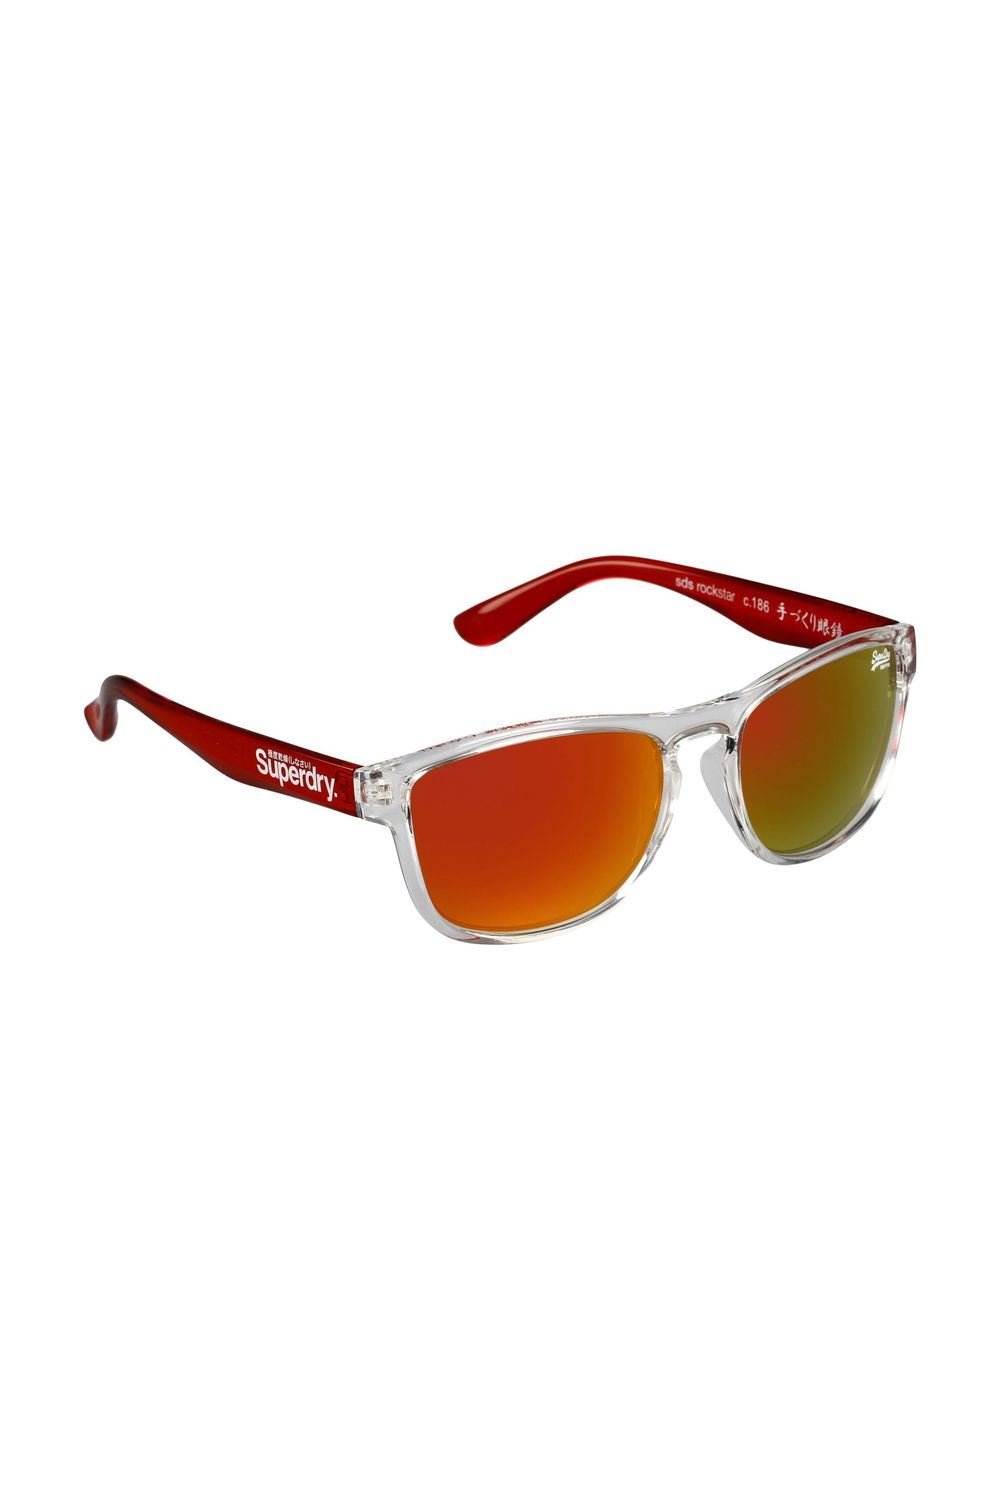 Cato Fashions | Cato Rockstar Sunglasses